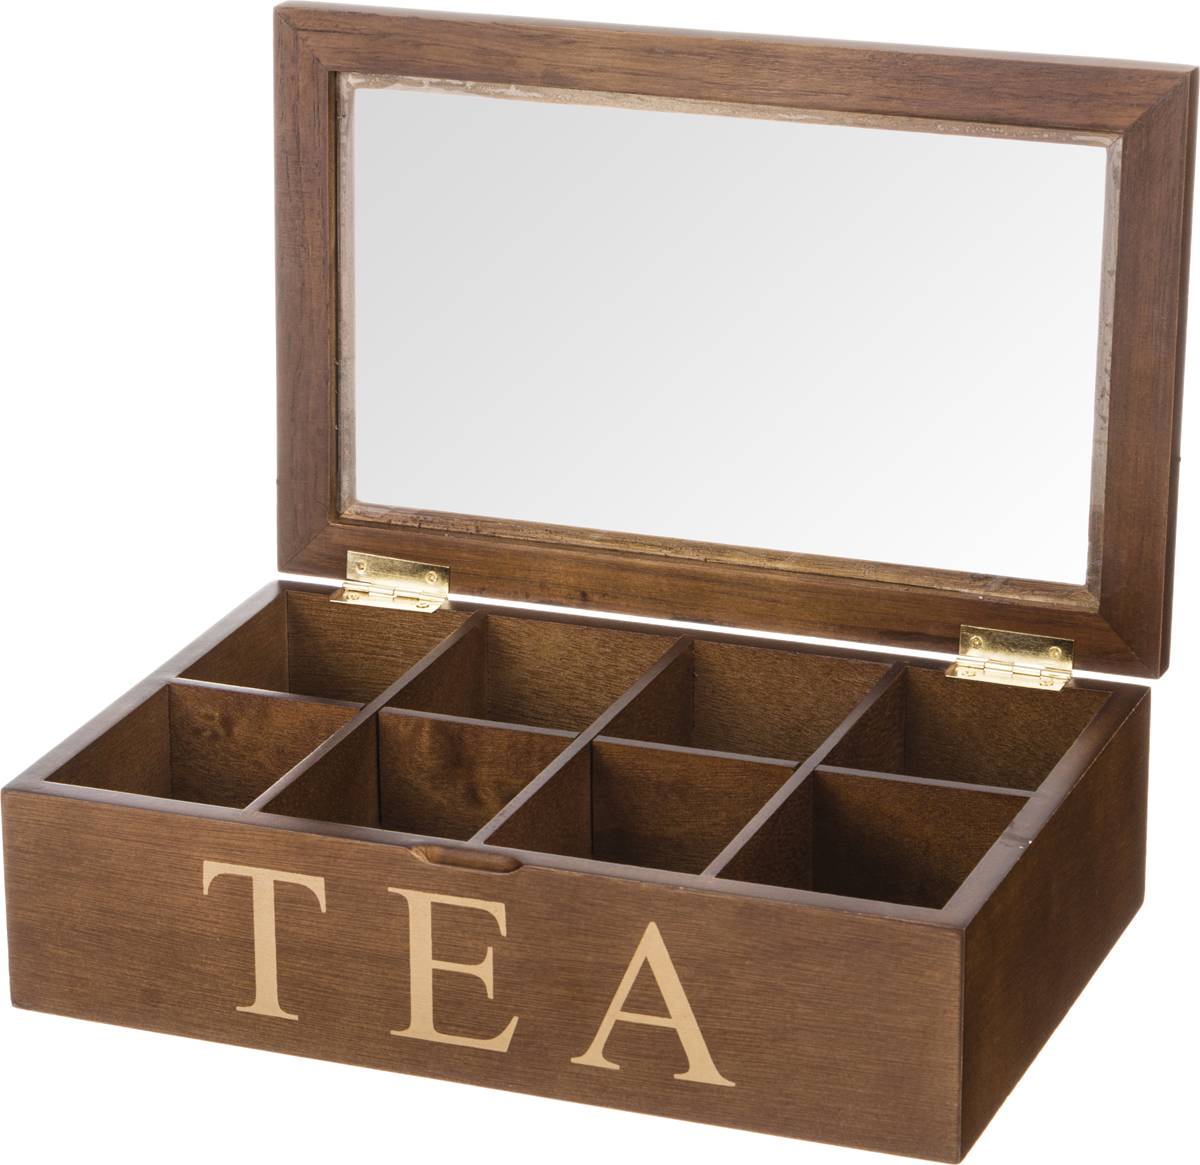 Чай шкатулка купить. Лефард шкатулка для чайных. Деревянная коробочка для чая. Коробка для чая деревянная. Чай в деревянной шкатулке.